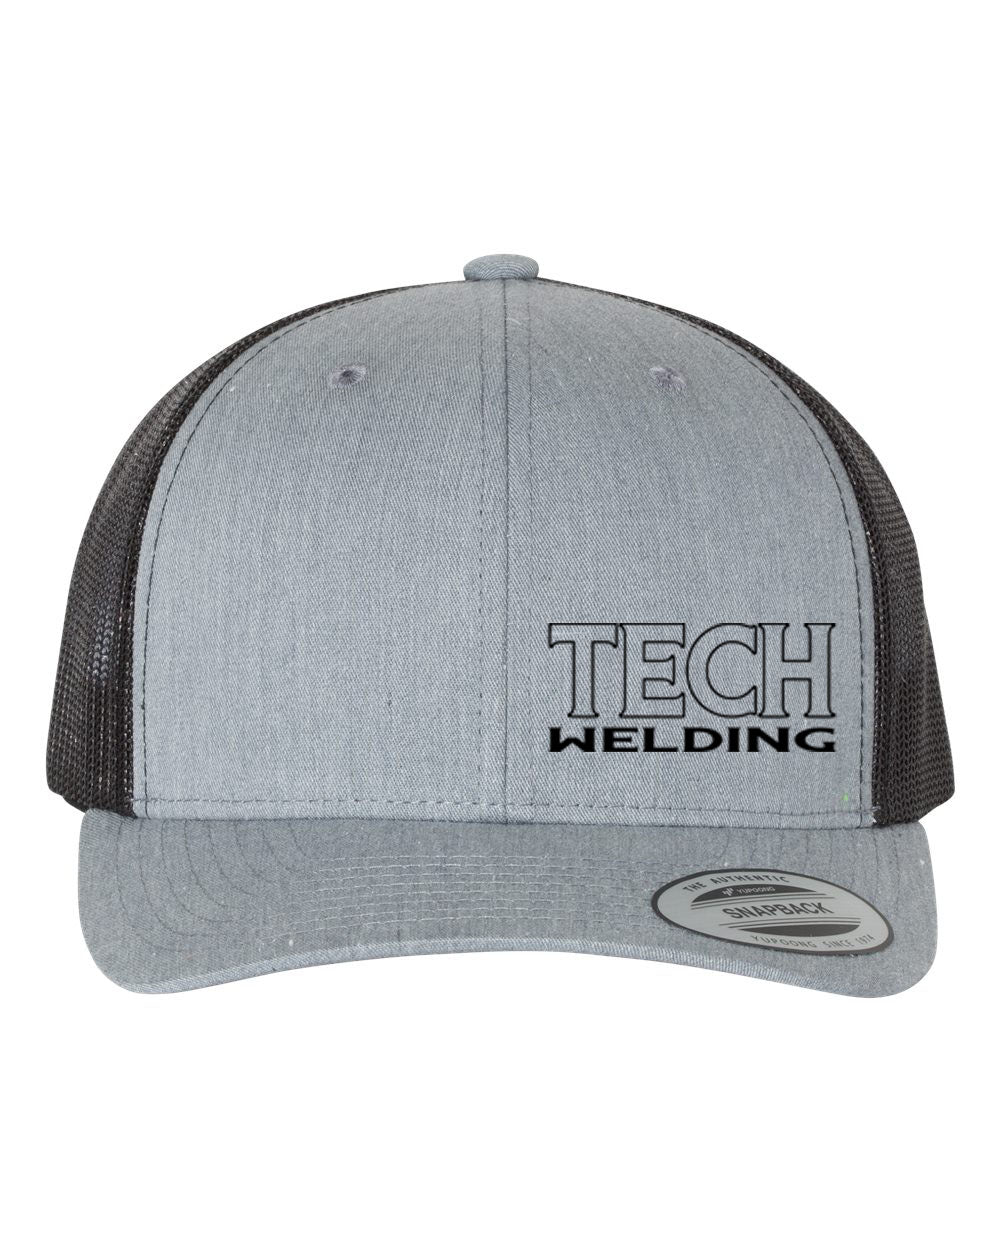 Sussex Tech Welding Design 3 Trucker Hat